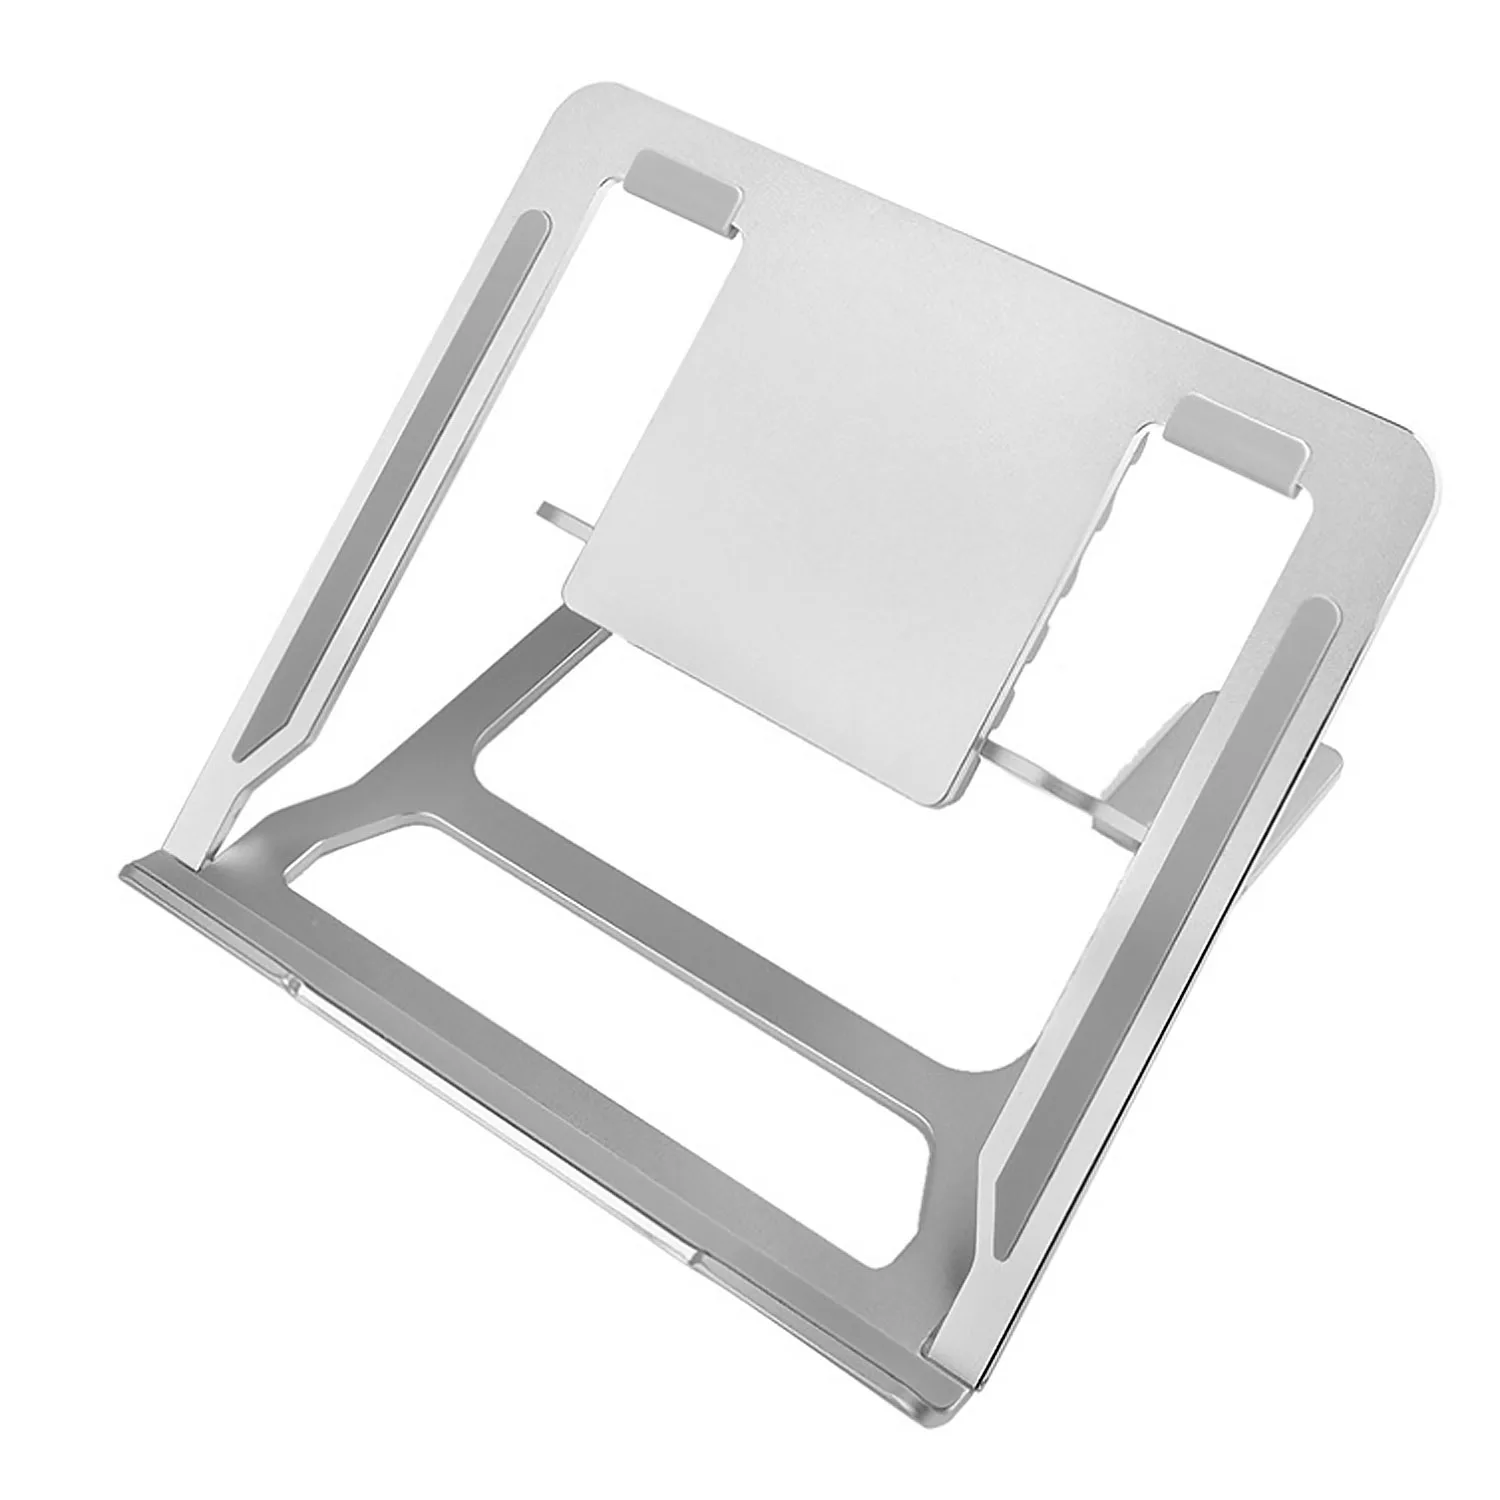 Besegad универсальная подставка для ноутбука, Портативная Складная регулируемая алюминиевая подставка для ноутбуков, планшетов, держатель для Macbook